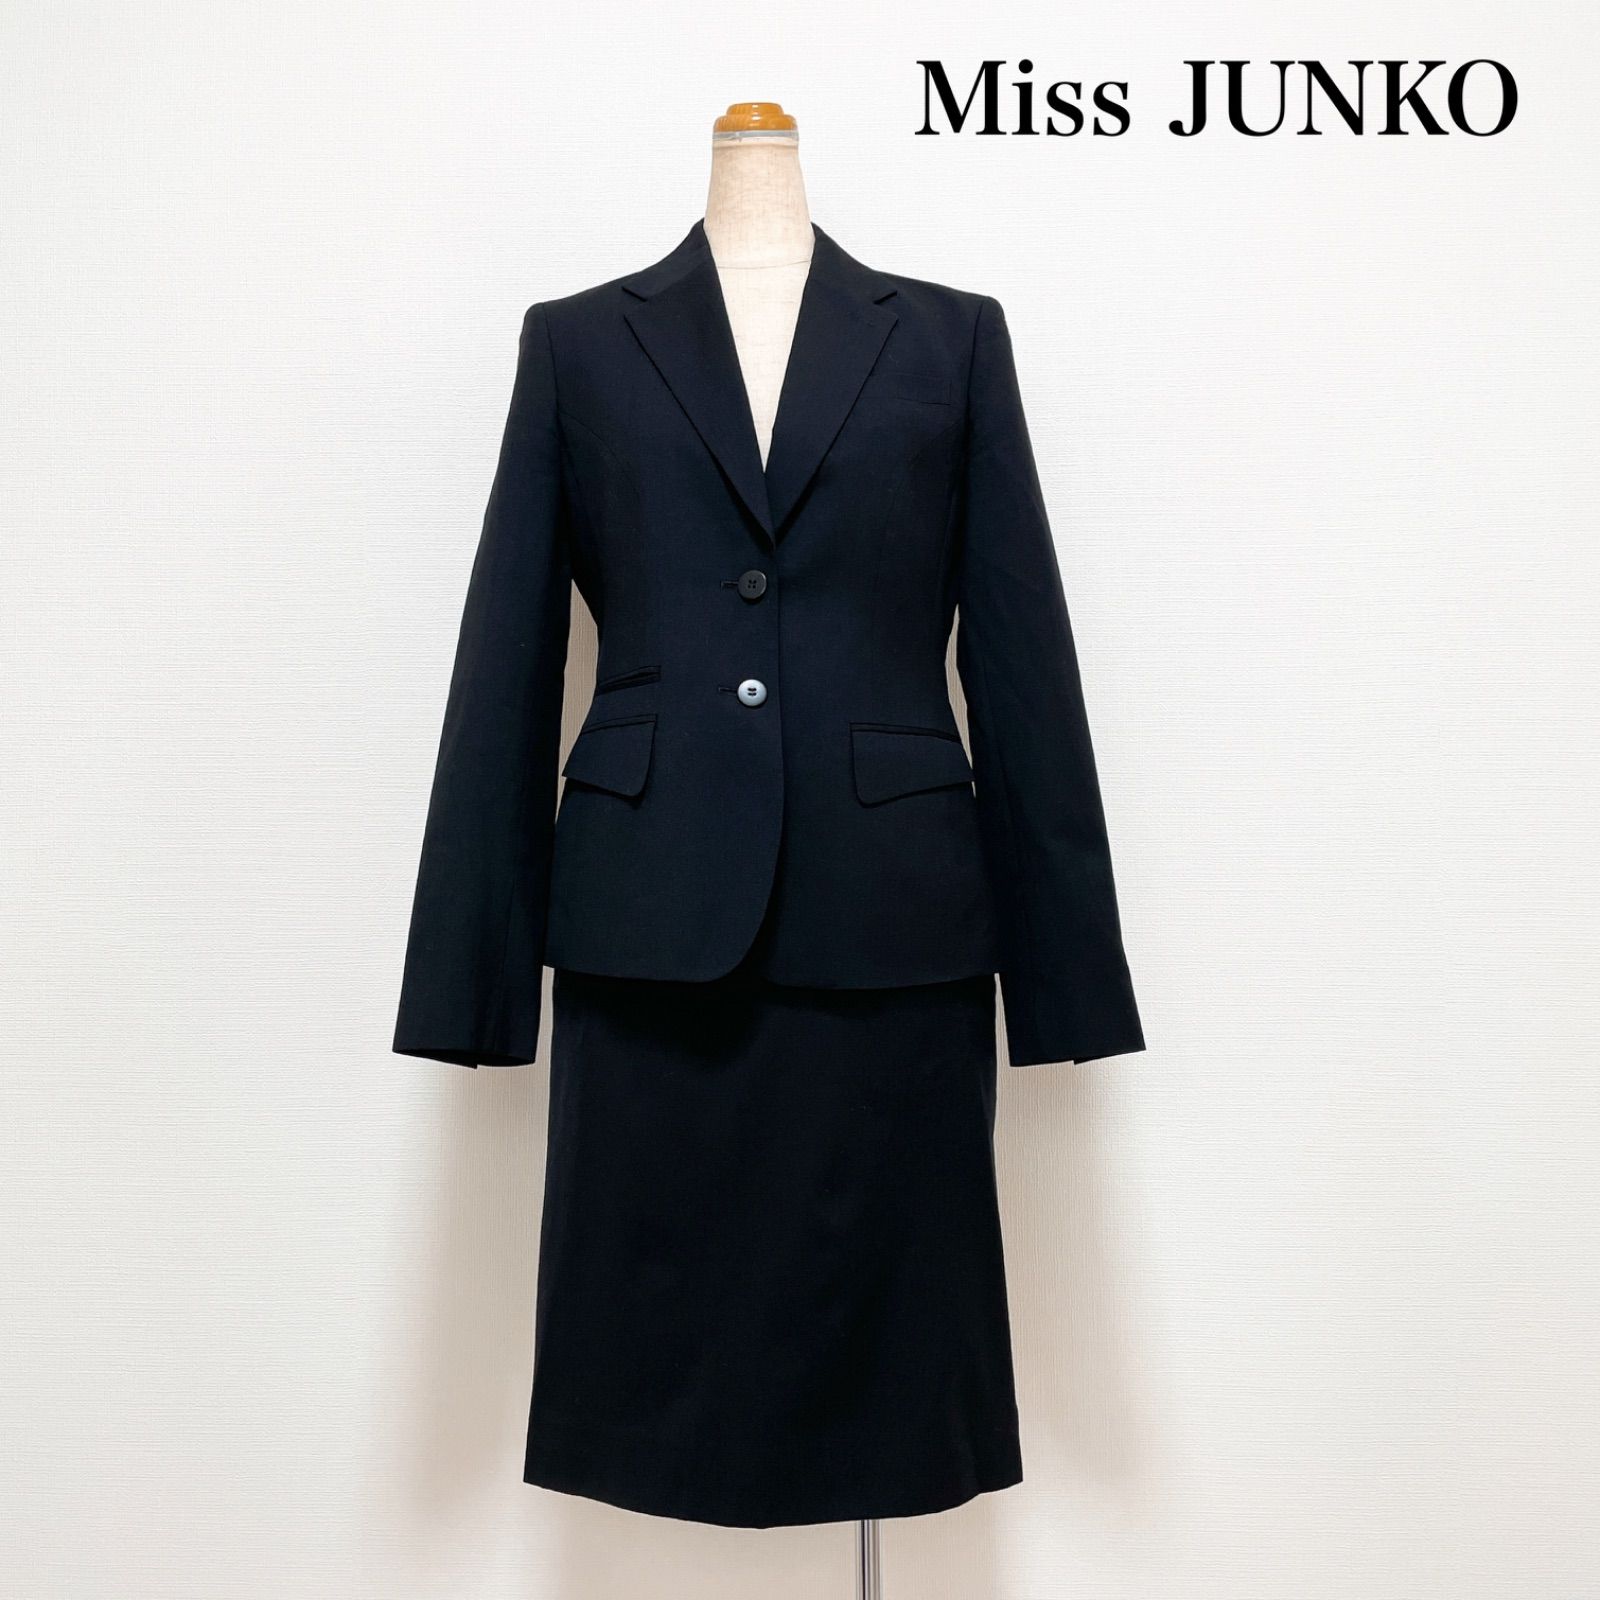 Miss JUNKO ミスジュンコ スカートスーツ セットアップ 7号 Sサイズ